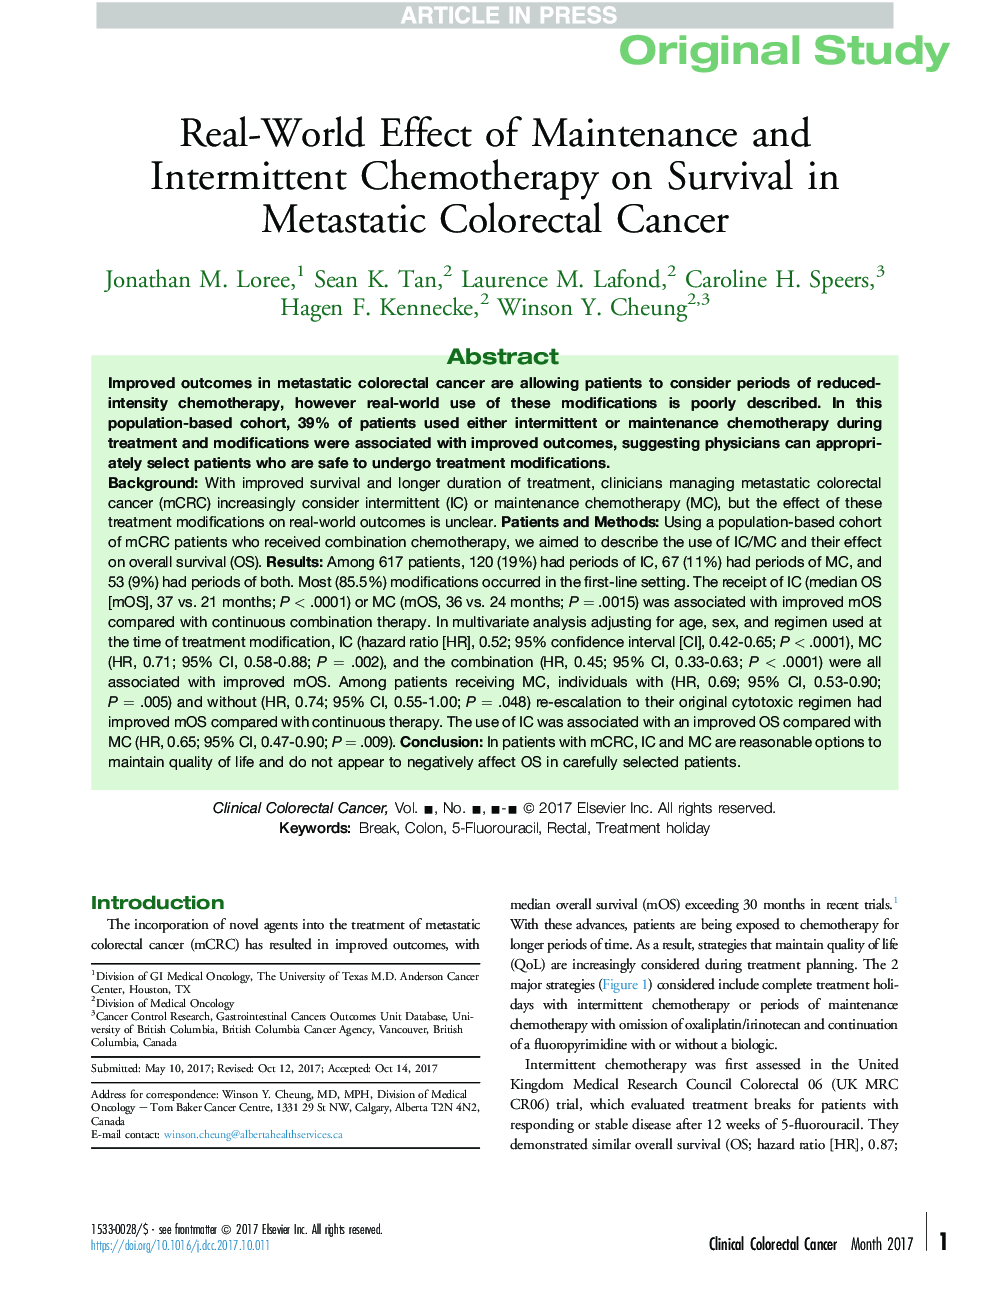 تأثیر واقعی تعمیرات و شیمیدرمانی متناوب بر زنده ماندن در سرطان متاستاتیک کولورکتال 